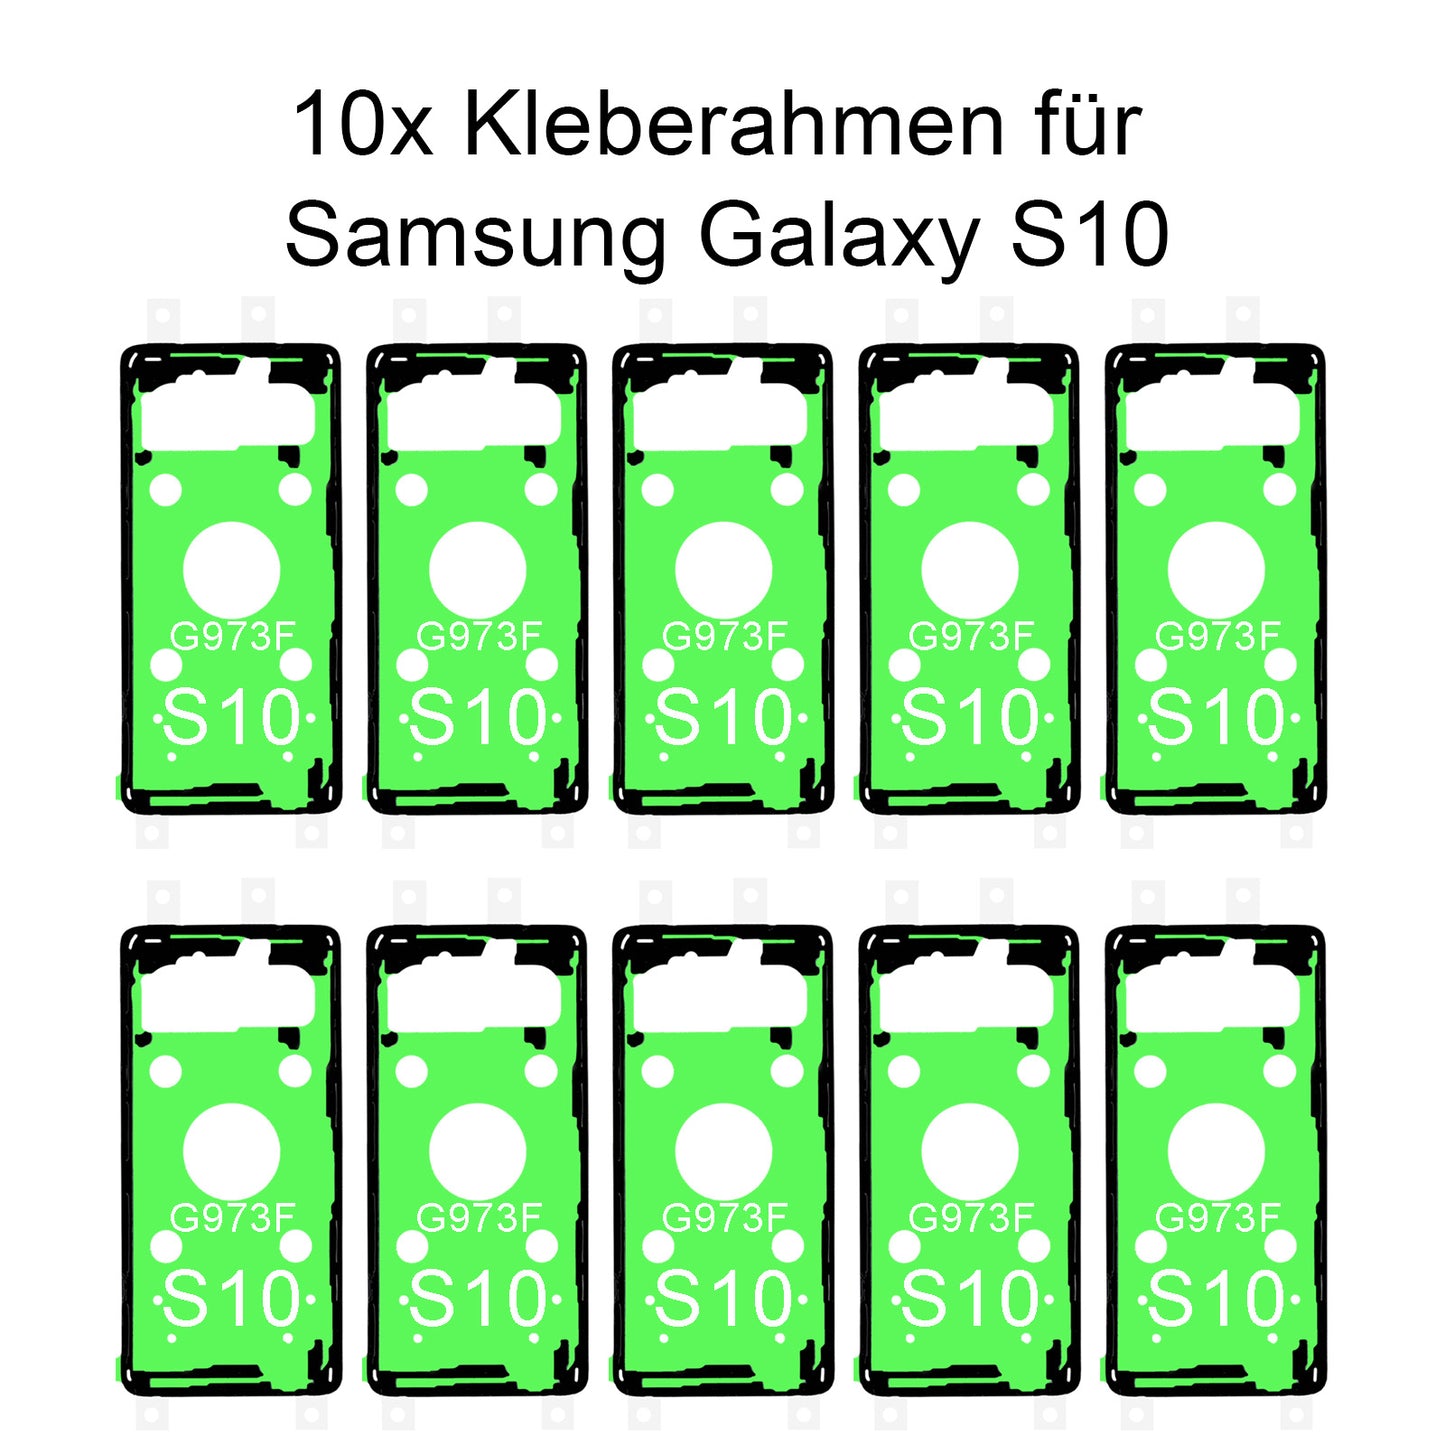 10x von unsern Samsung Galaxy S10 G973F Kleberahmen, jetzt im Dinngsonline Shop entdecken und bestellen!